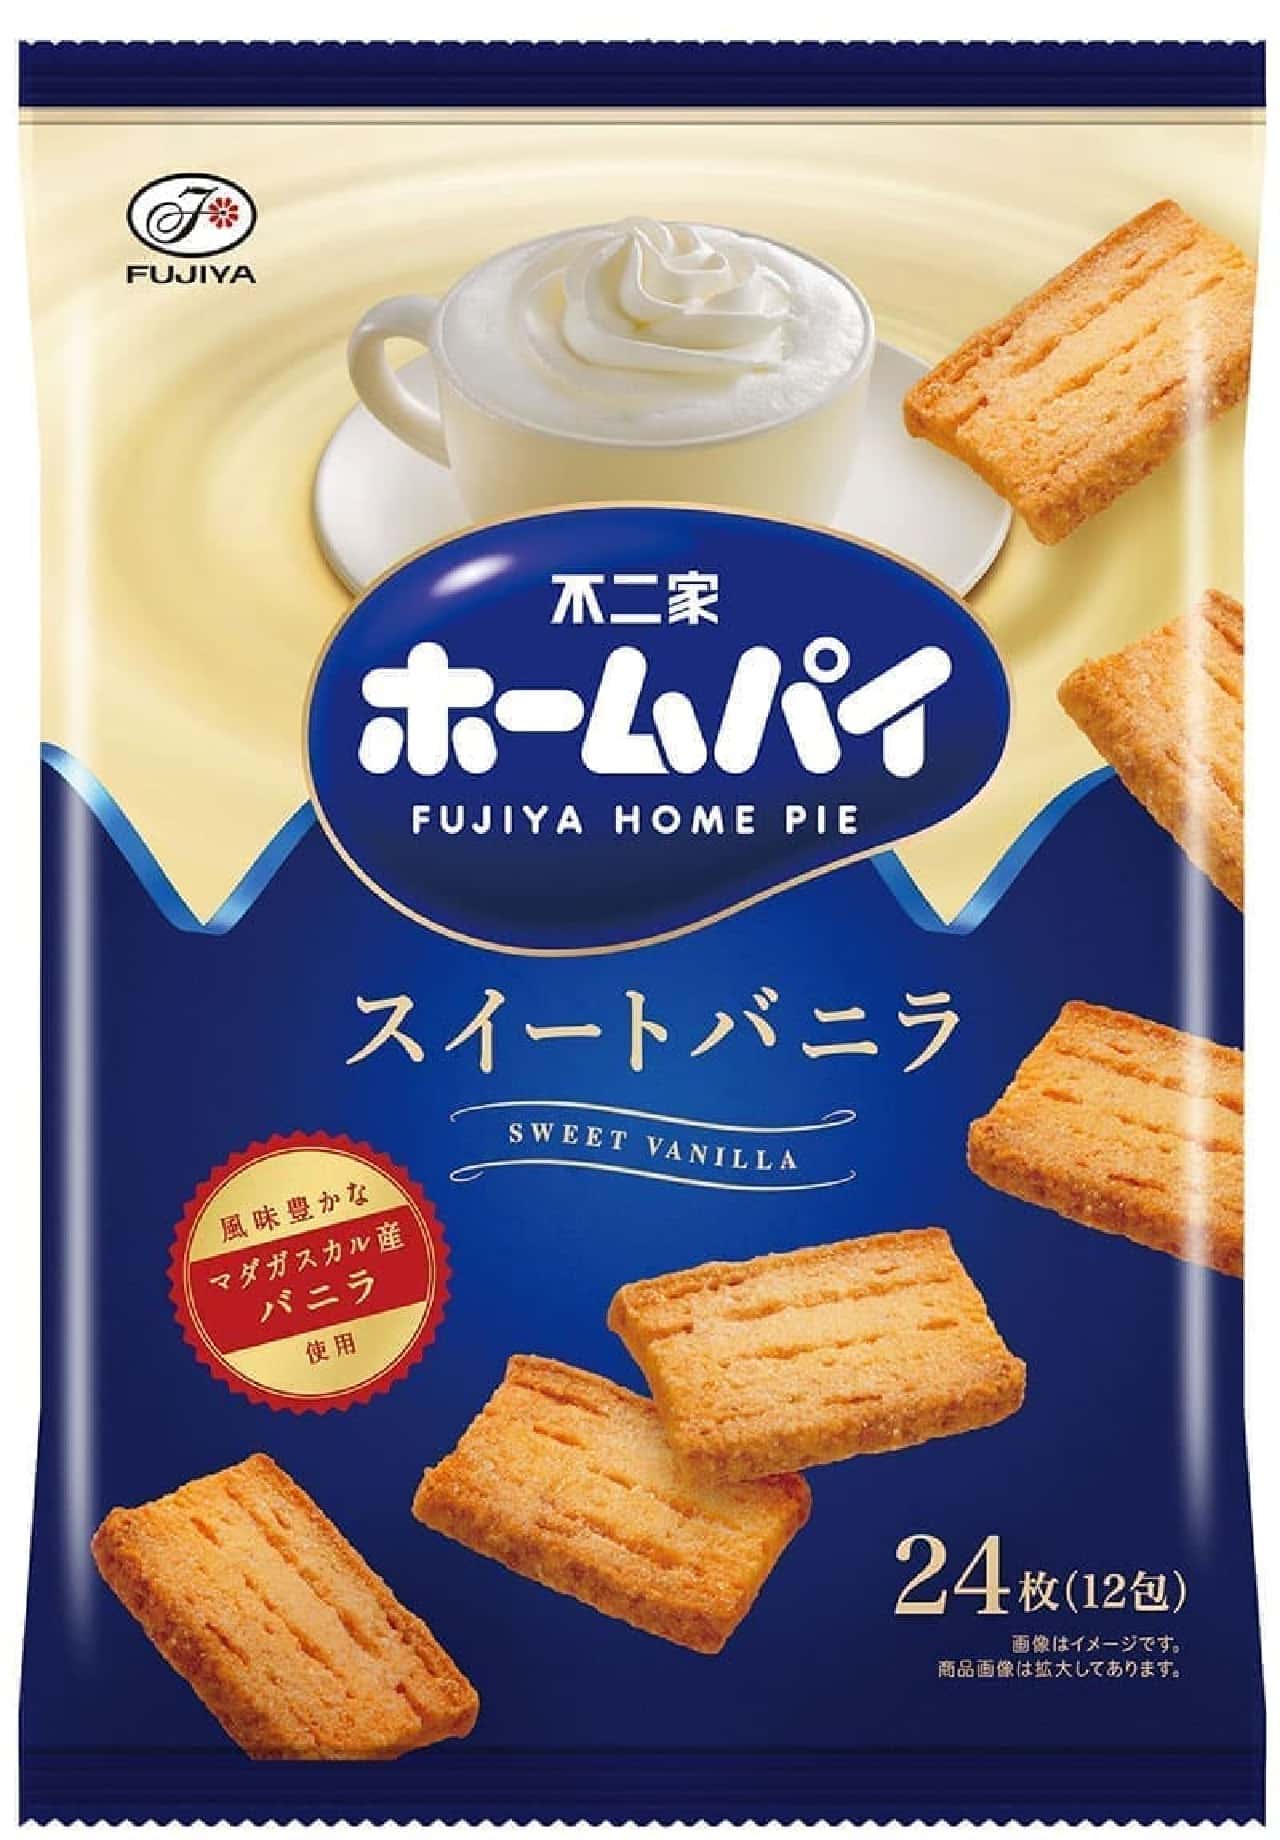 Fujiya "Home Pie (Sweet Vanilla)"